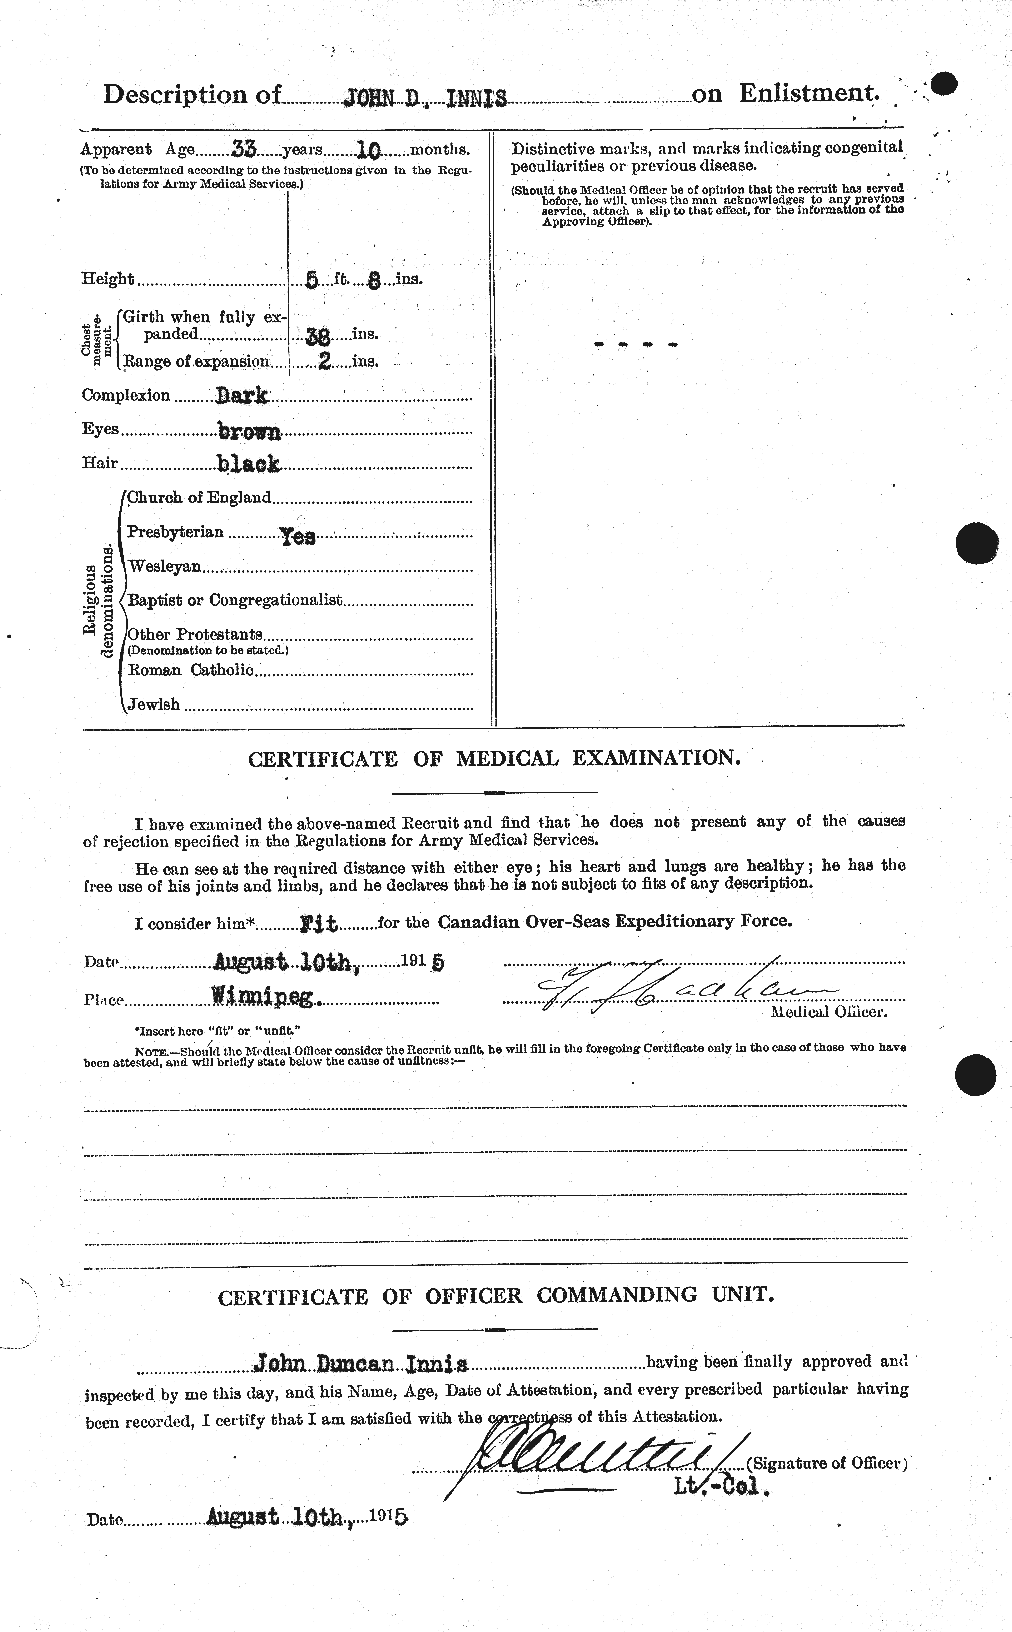 Dossiers du Personnel de la Première Guerre mondiale - CEC 415476b